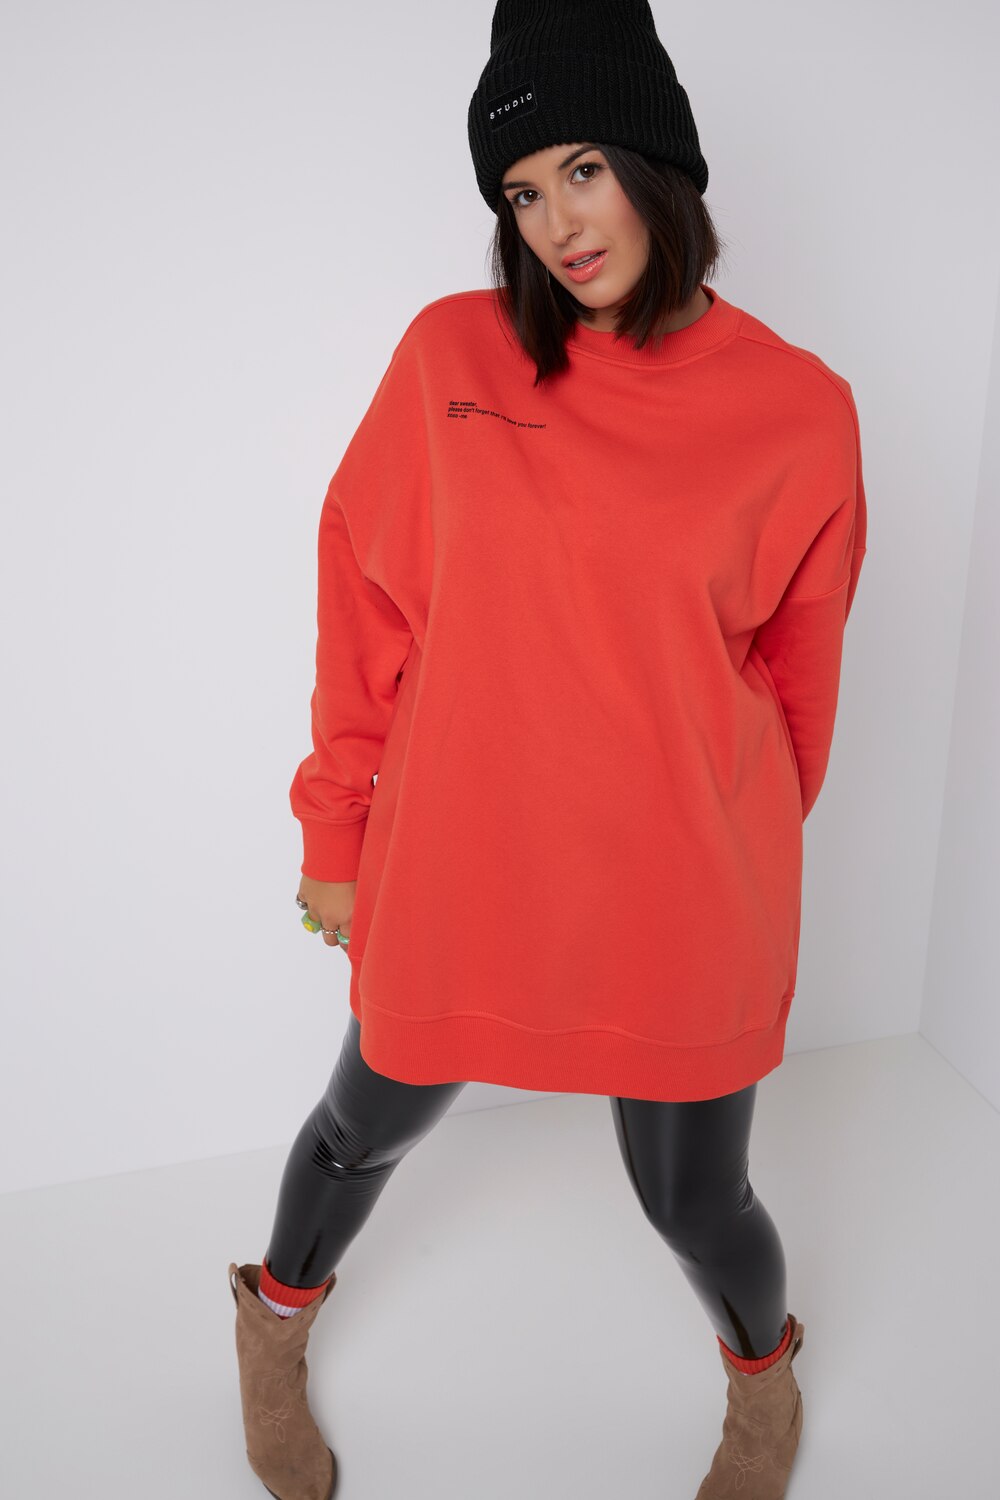 Grote Maten sweatshirt, Dames, oranje, Maat: 50/52, Katoen/Polyester, Studio Untold